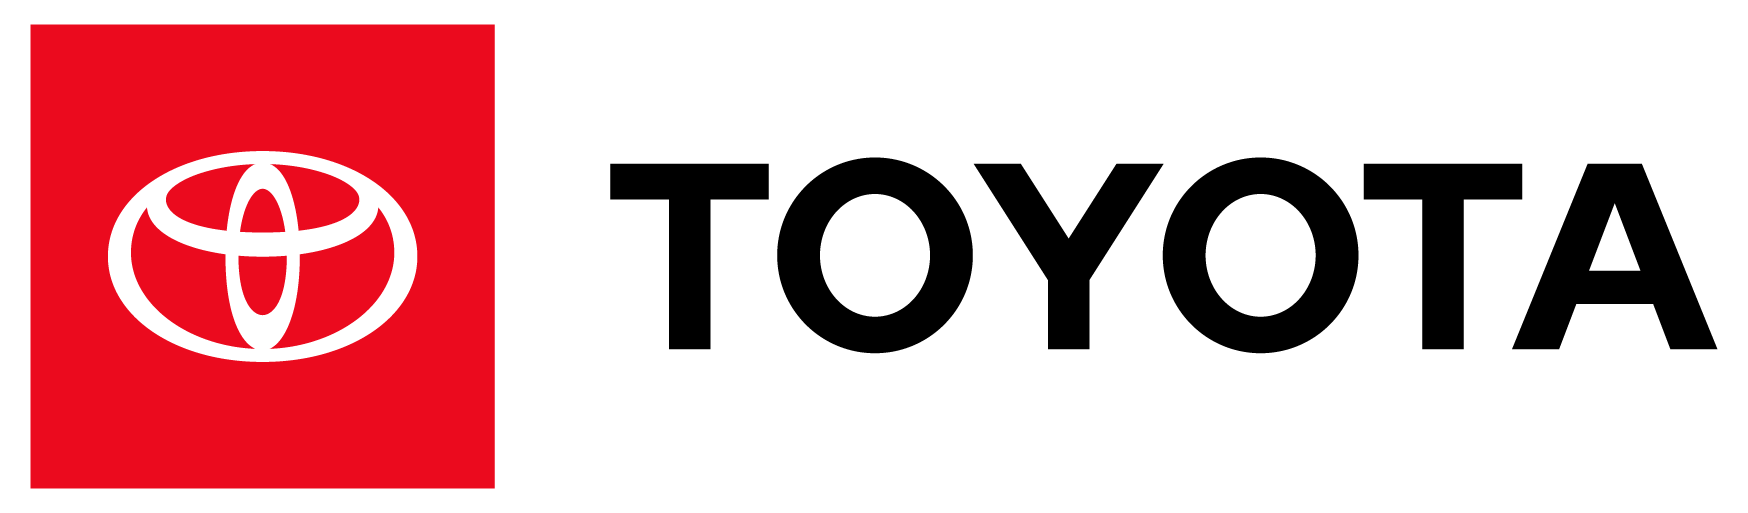 toyota-logo-2019-wersja-pozioma